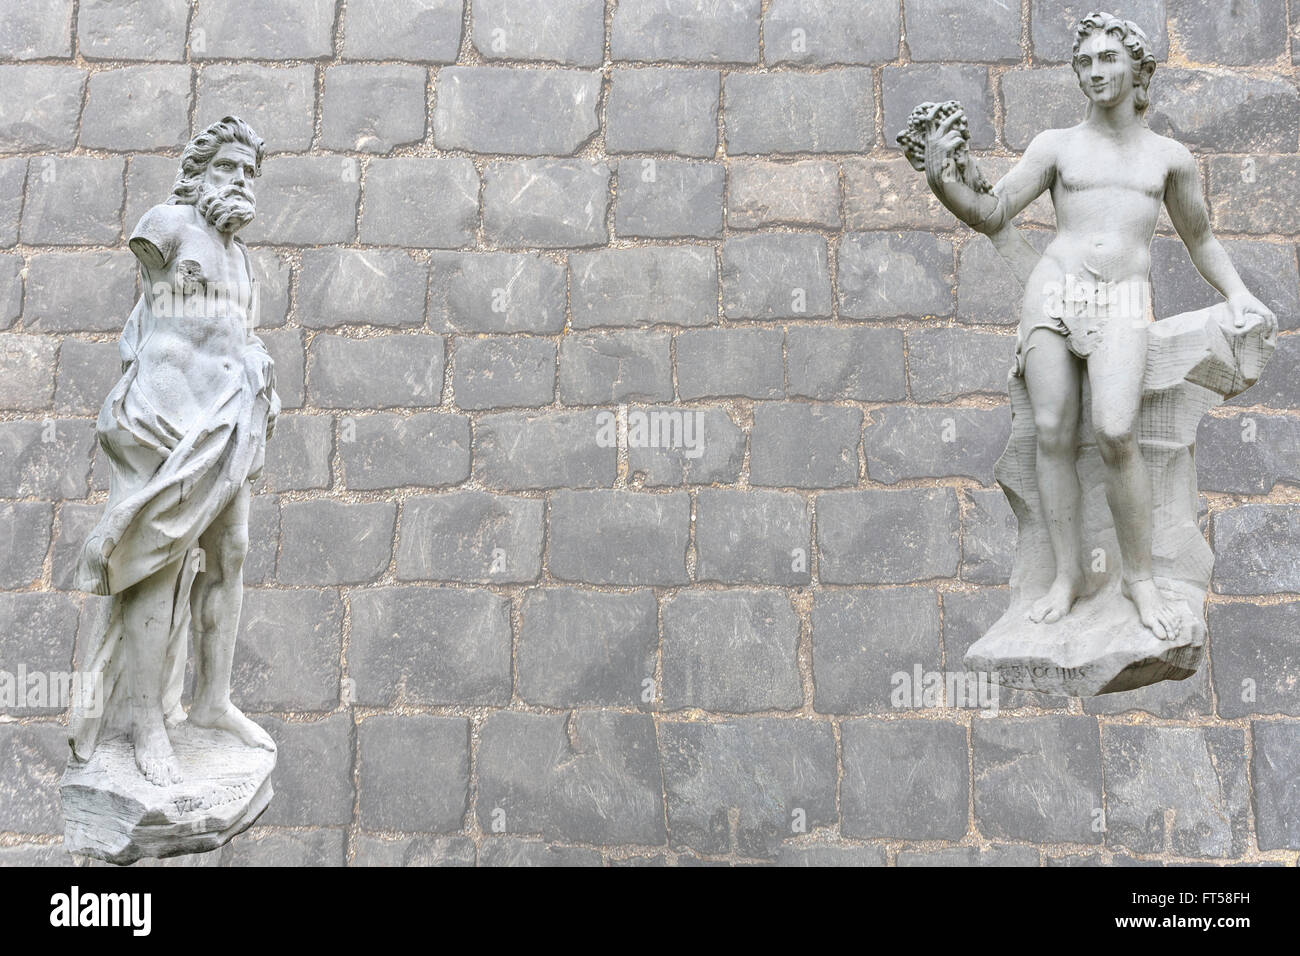 Porta di Bacco Ubriaco Vulcanus torna su Olympe. Collage sulla base di un parco scultura da Sheremetev's wagon di Kuskovo. Foto Stock